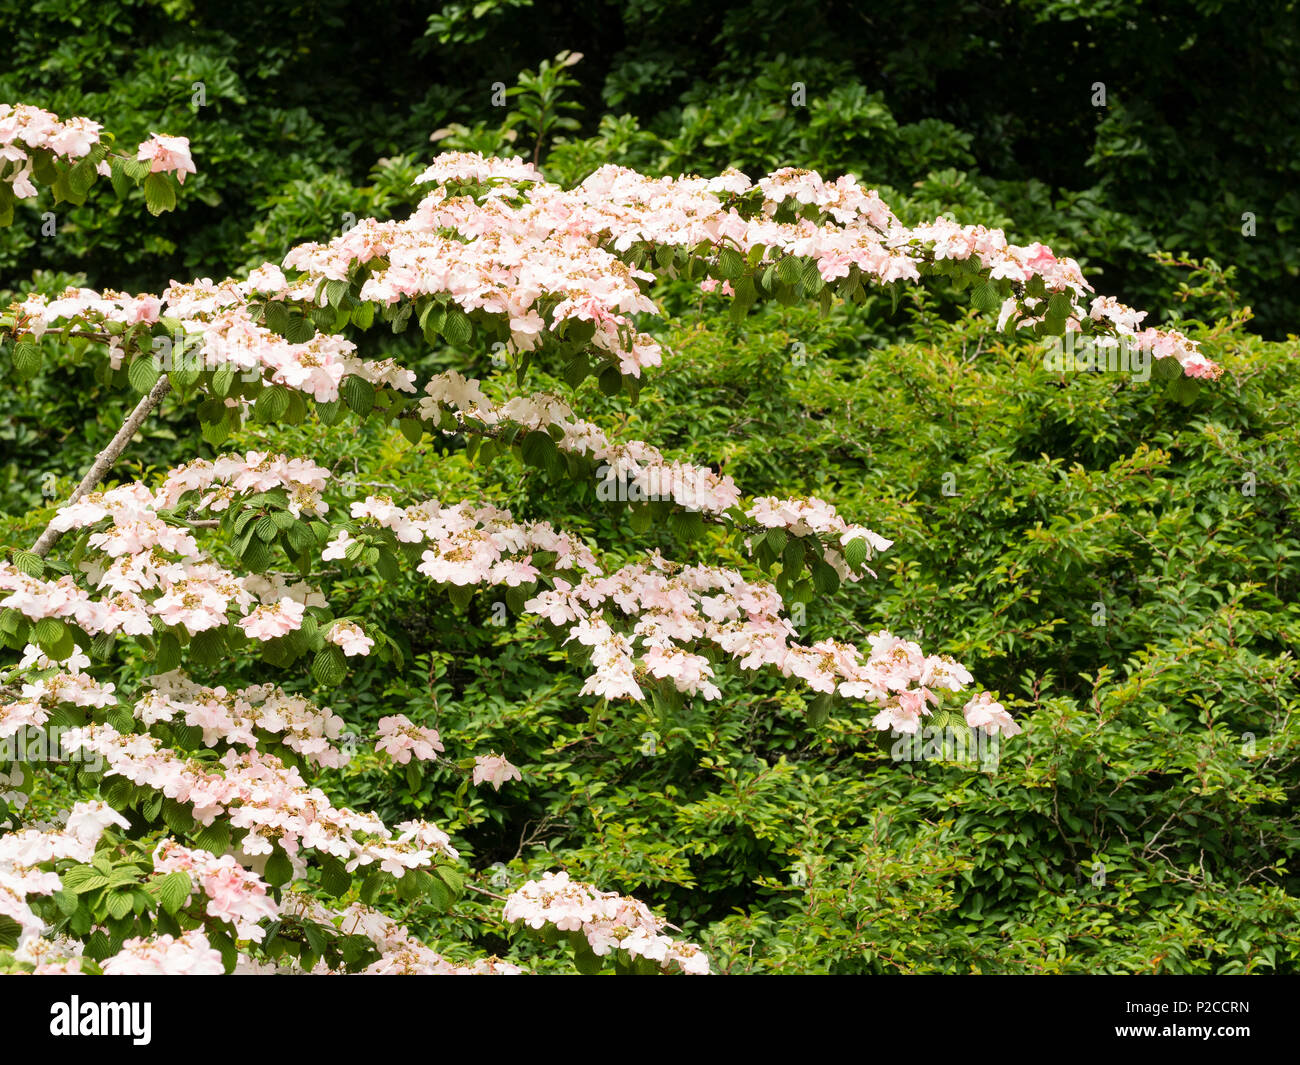 Zart rosa lacecap Blumen auf mehrstufige arrangiert, leicht überhängenden Zweigen der Hardy strauch Viburnum plicatum 'Pink Beauty' Stockfoto